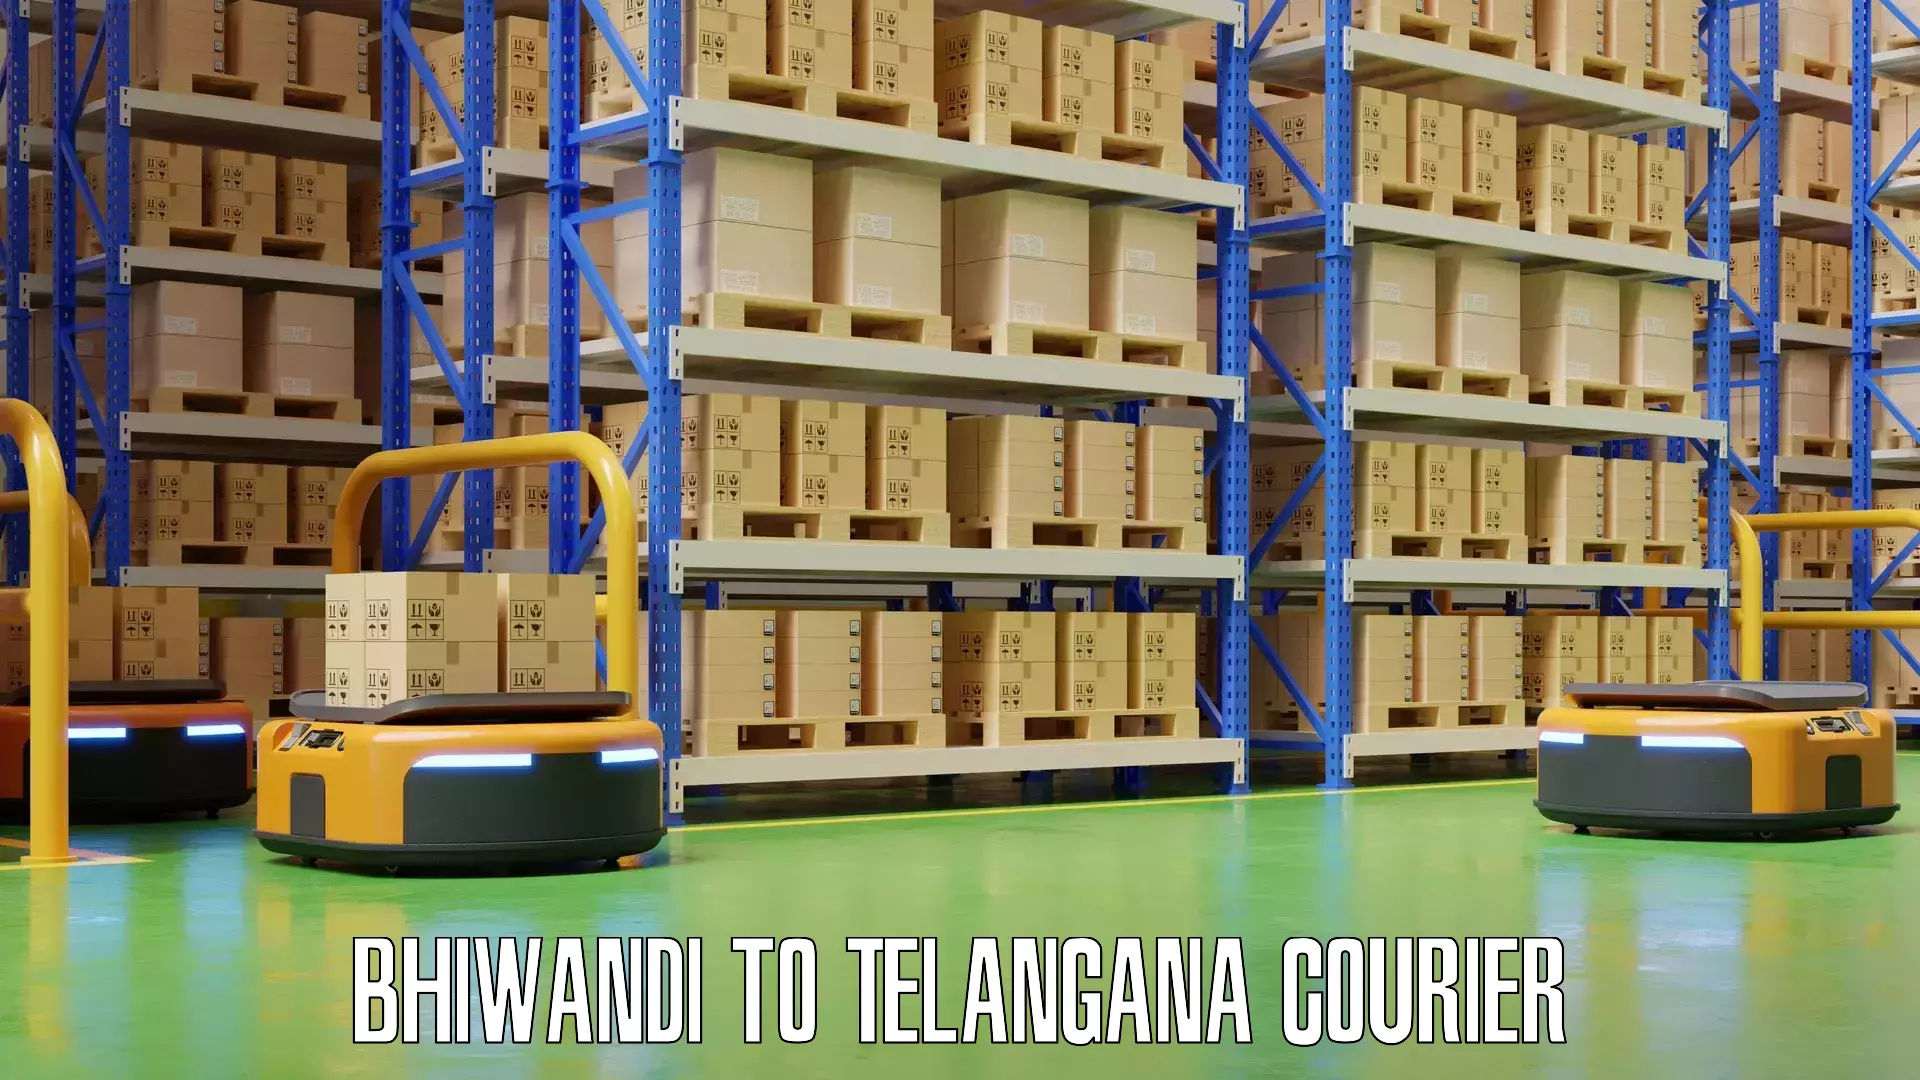 Hassle-free luggage shipping Bhiwandi to Telangana